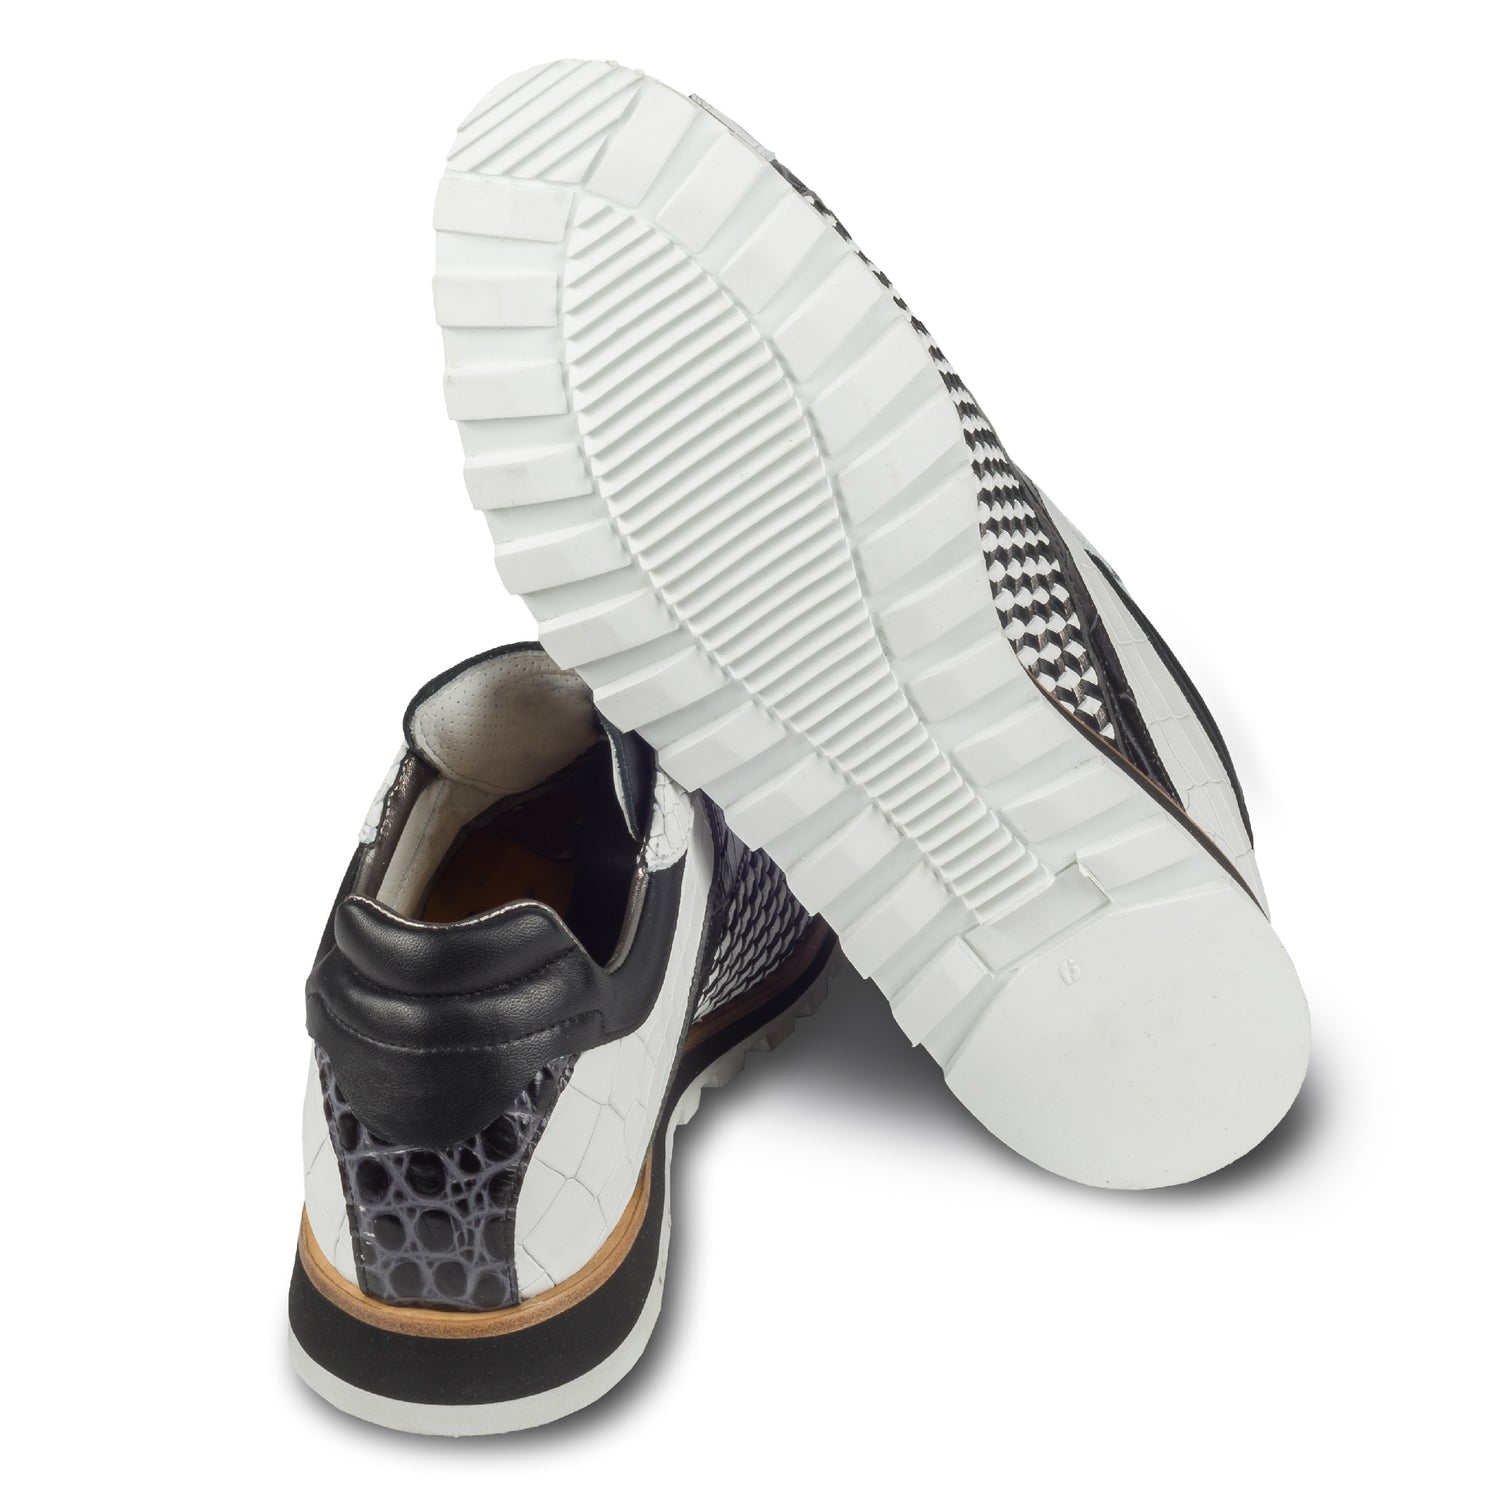 Lorenzi Herren Leder-Sneaker schwarz-weiß, mit raffinierter Prägung. Handgefertigt und durchgenäht.  Ansicht der Ferse und Sohlenunterseite.